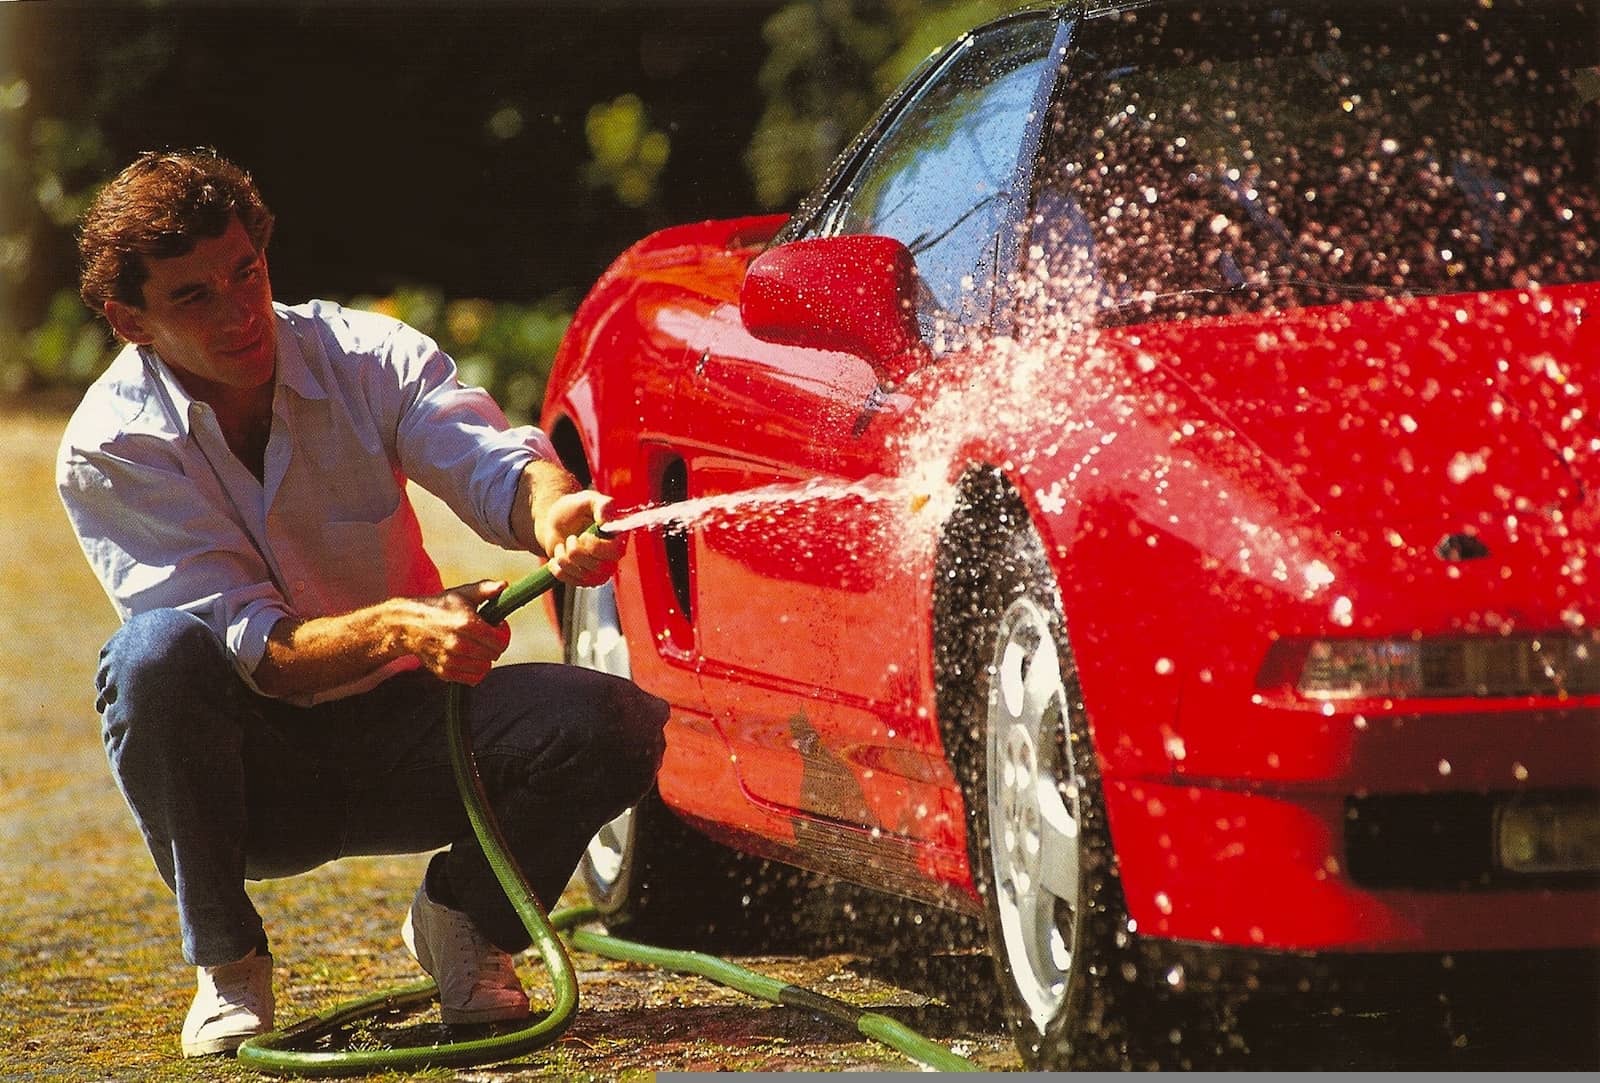 Imagen de Ayrton Senna lavando un Honda NSX rojo, destacando la figura del deportivo.